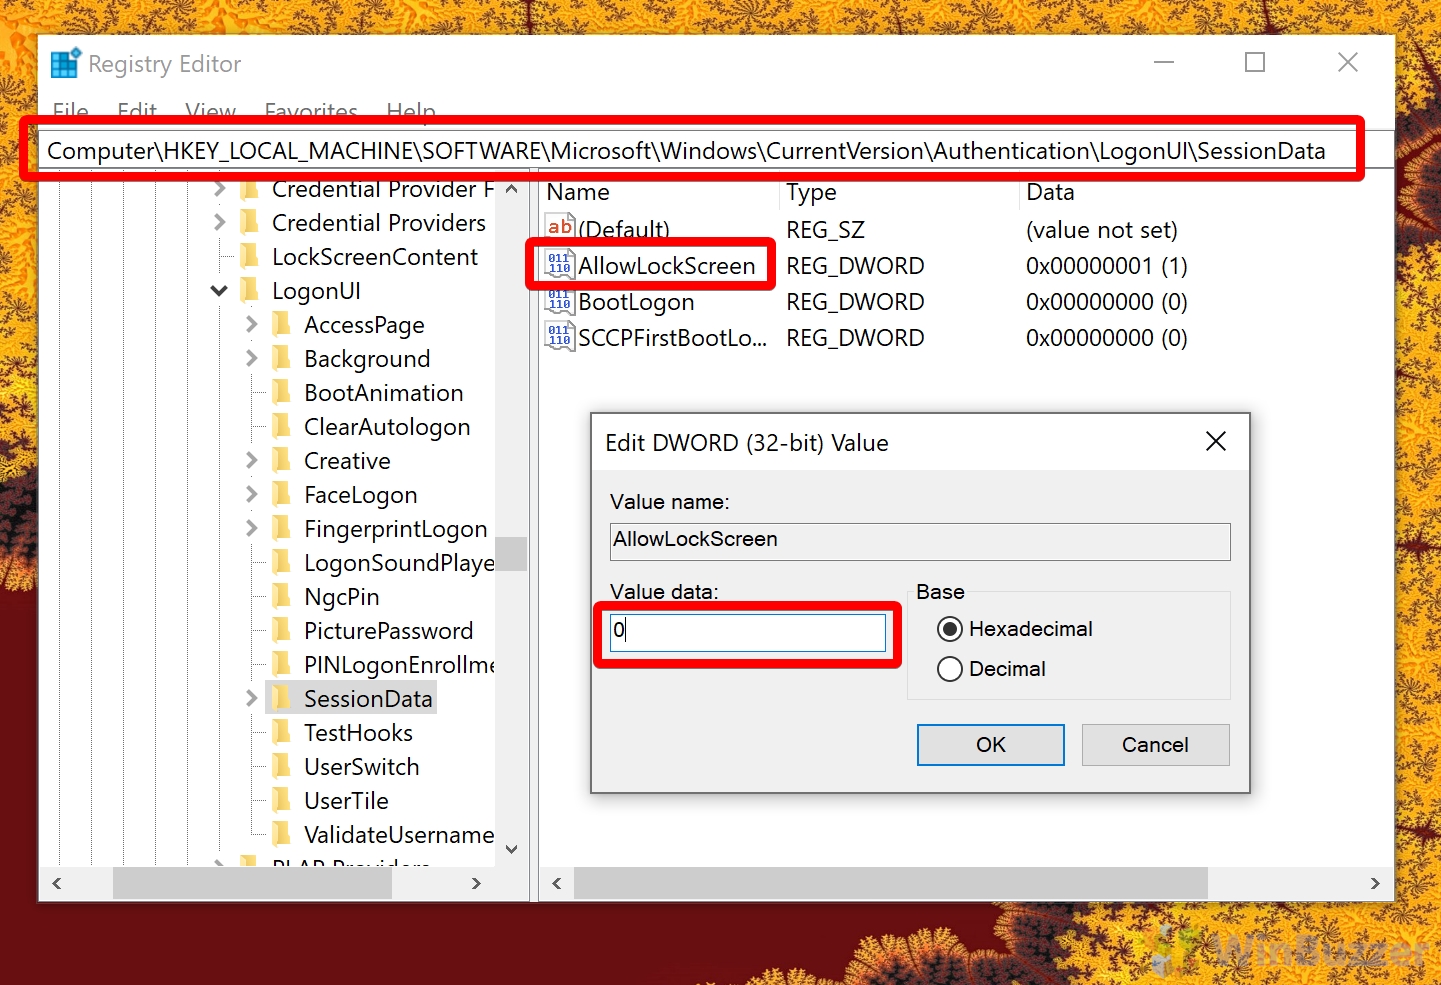 Windows 10 - registry editor - AllowLockScreen